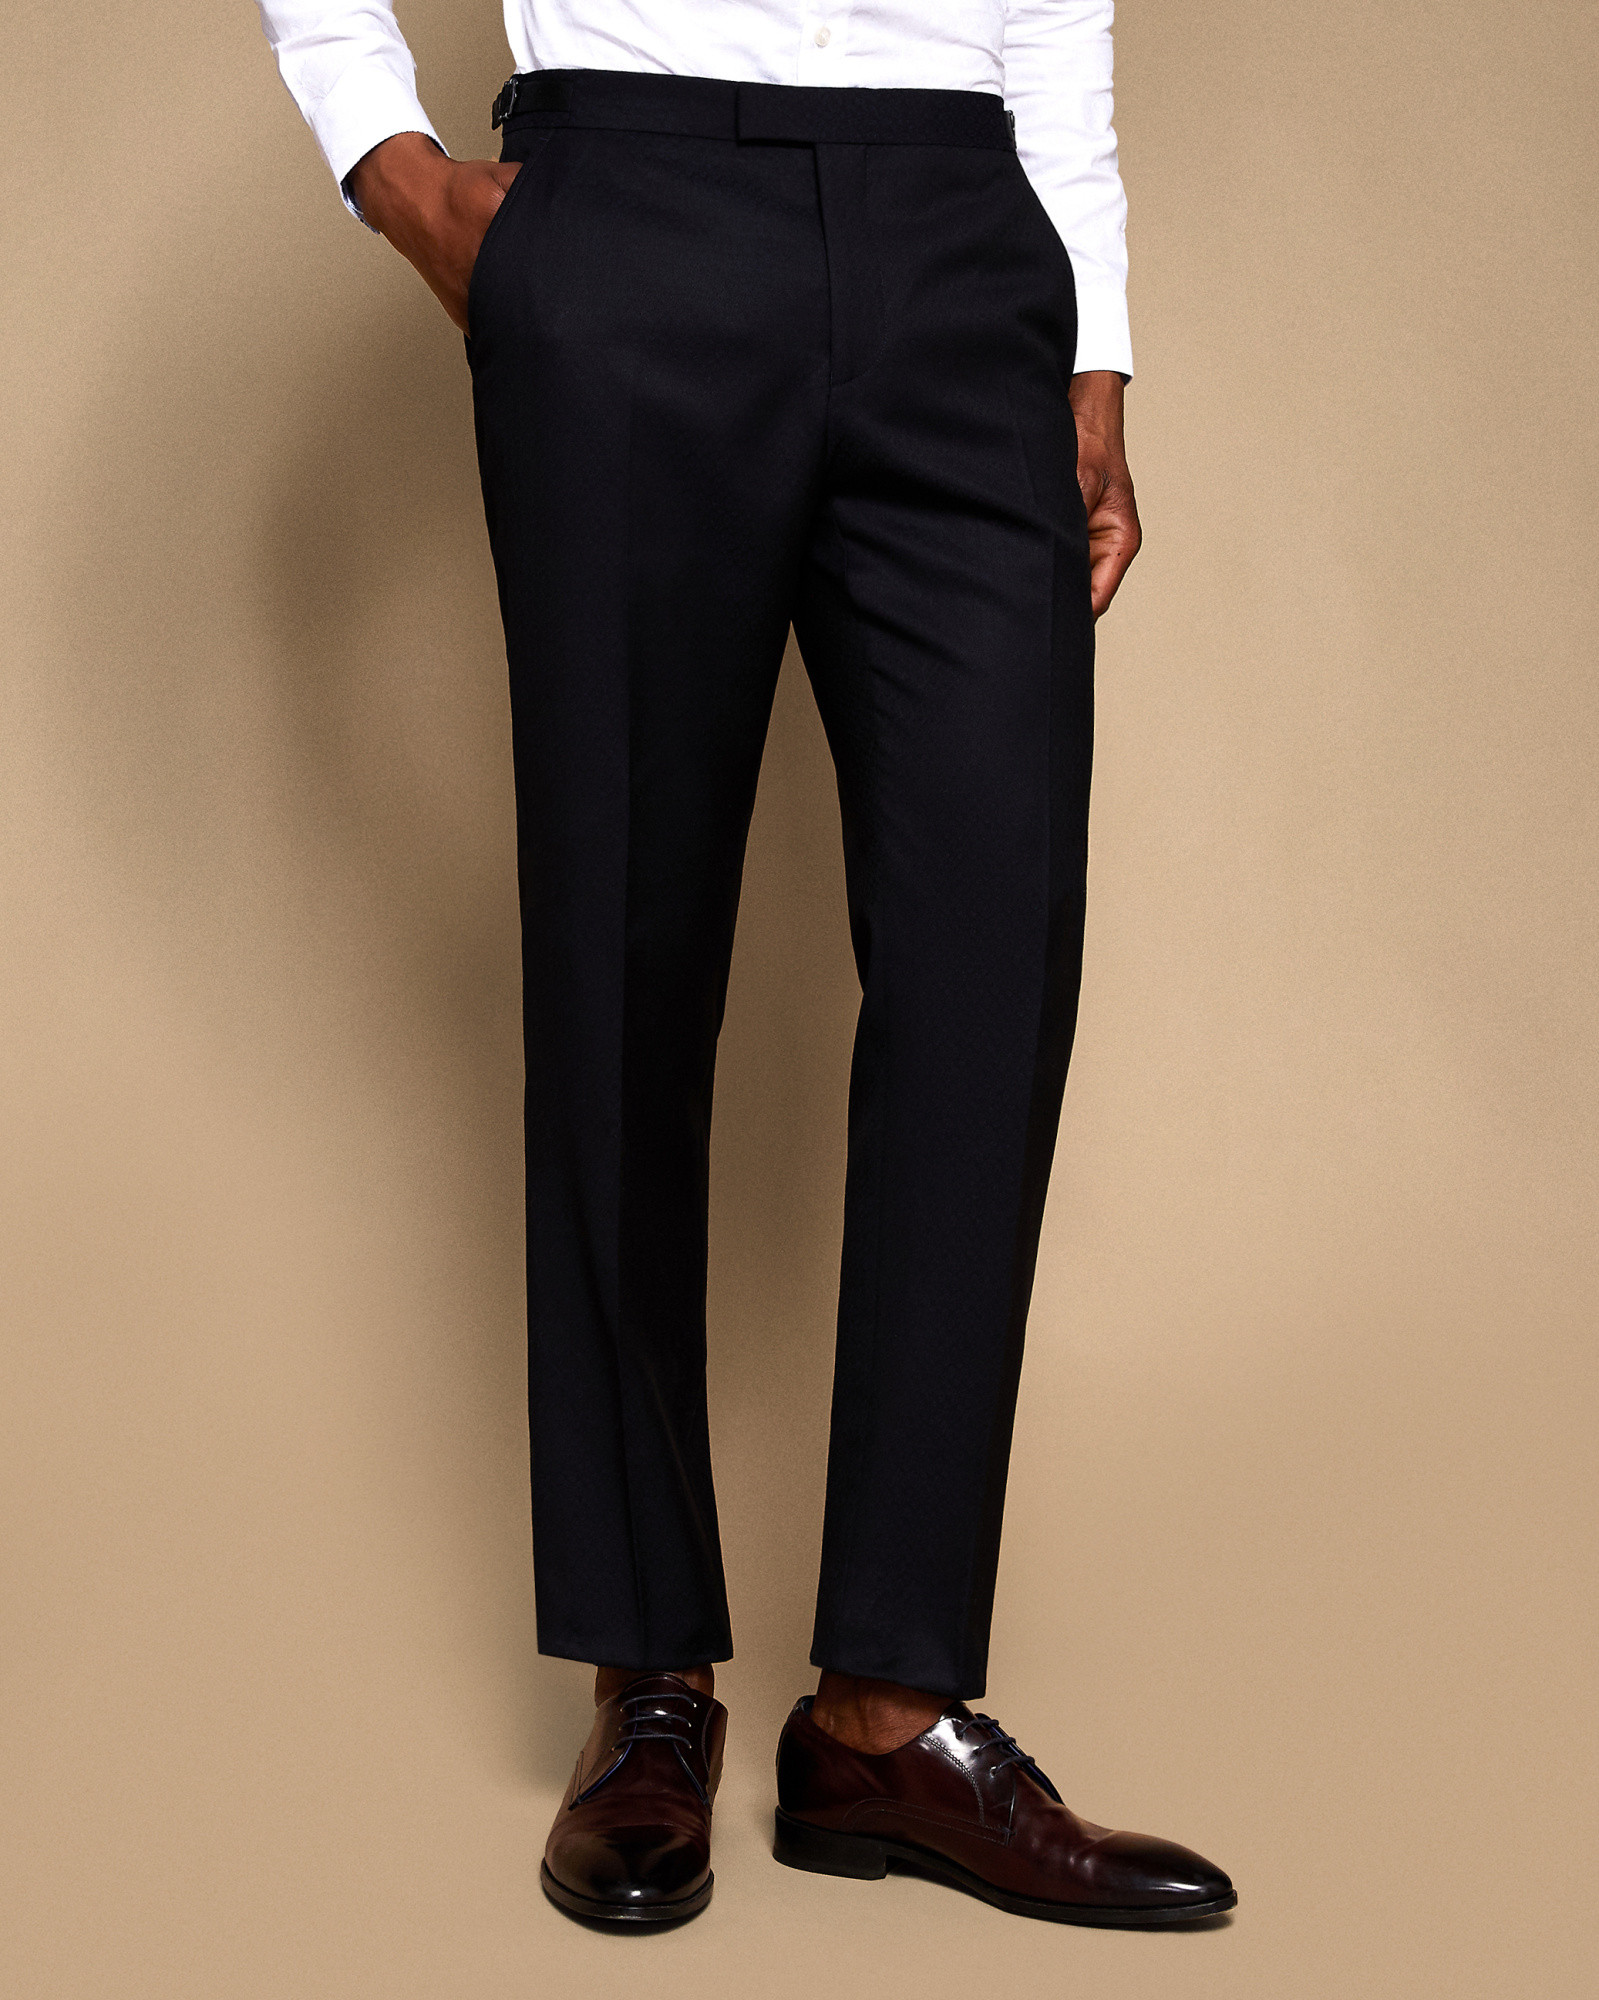 LEWEST Slim fit jacquard wool suit pants